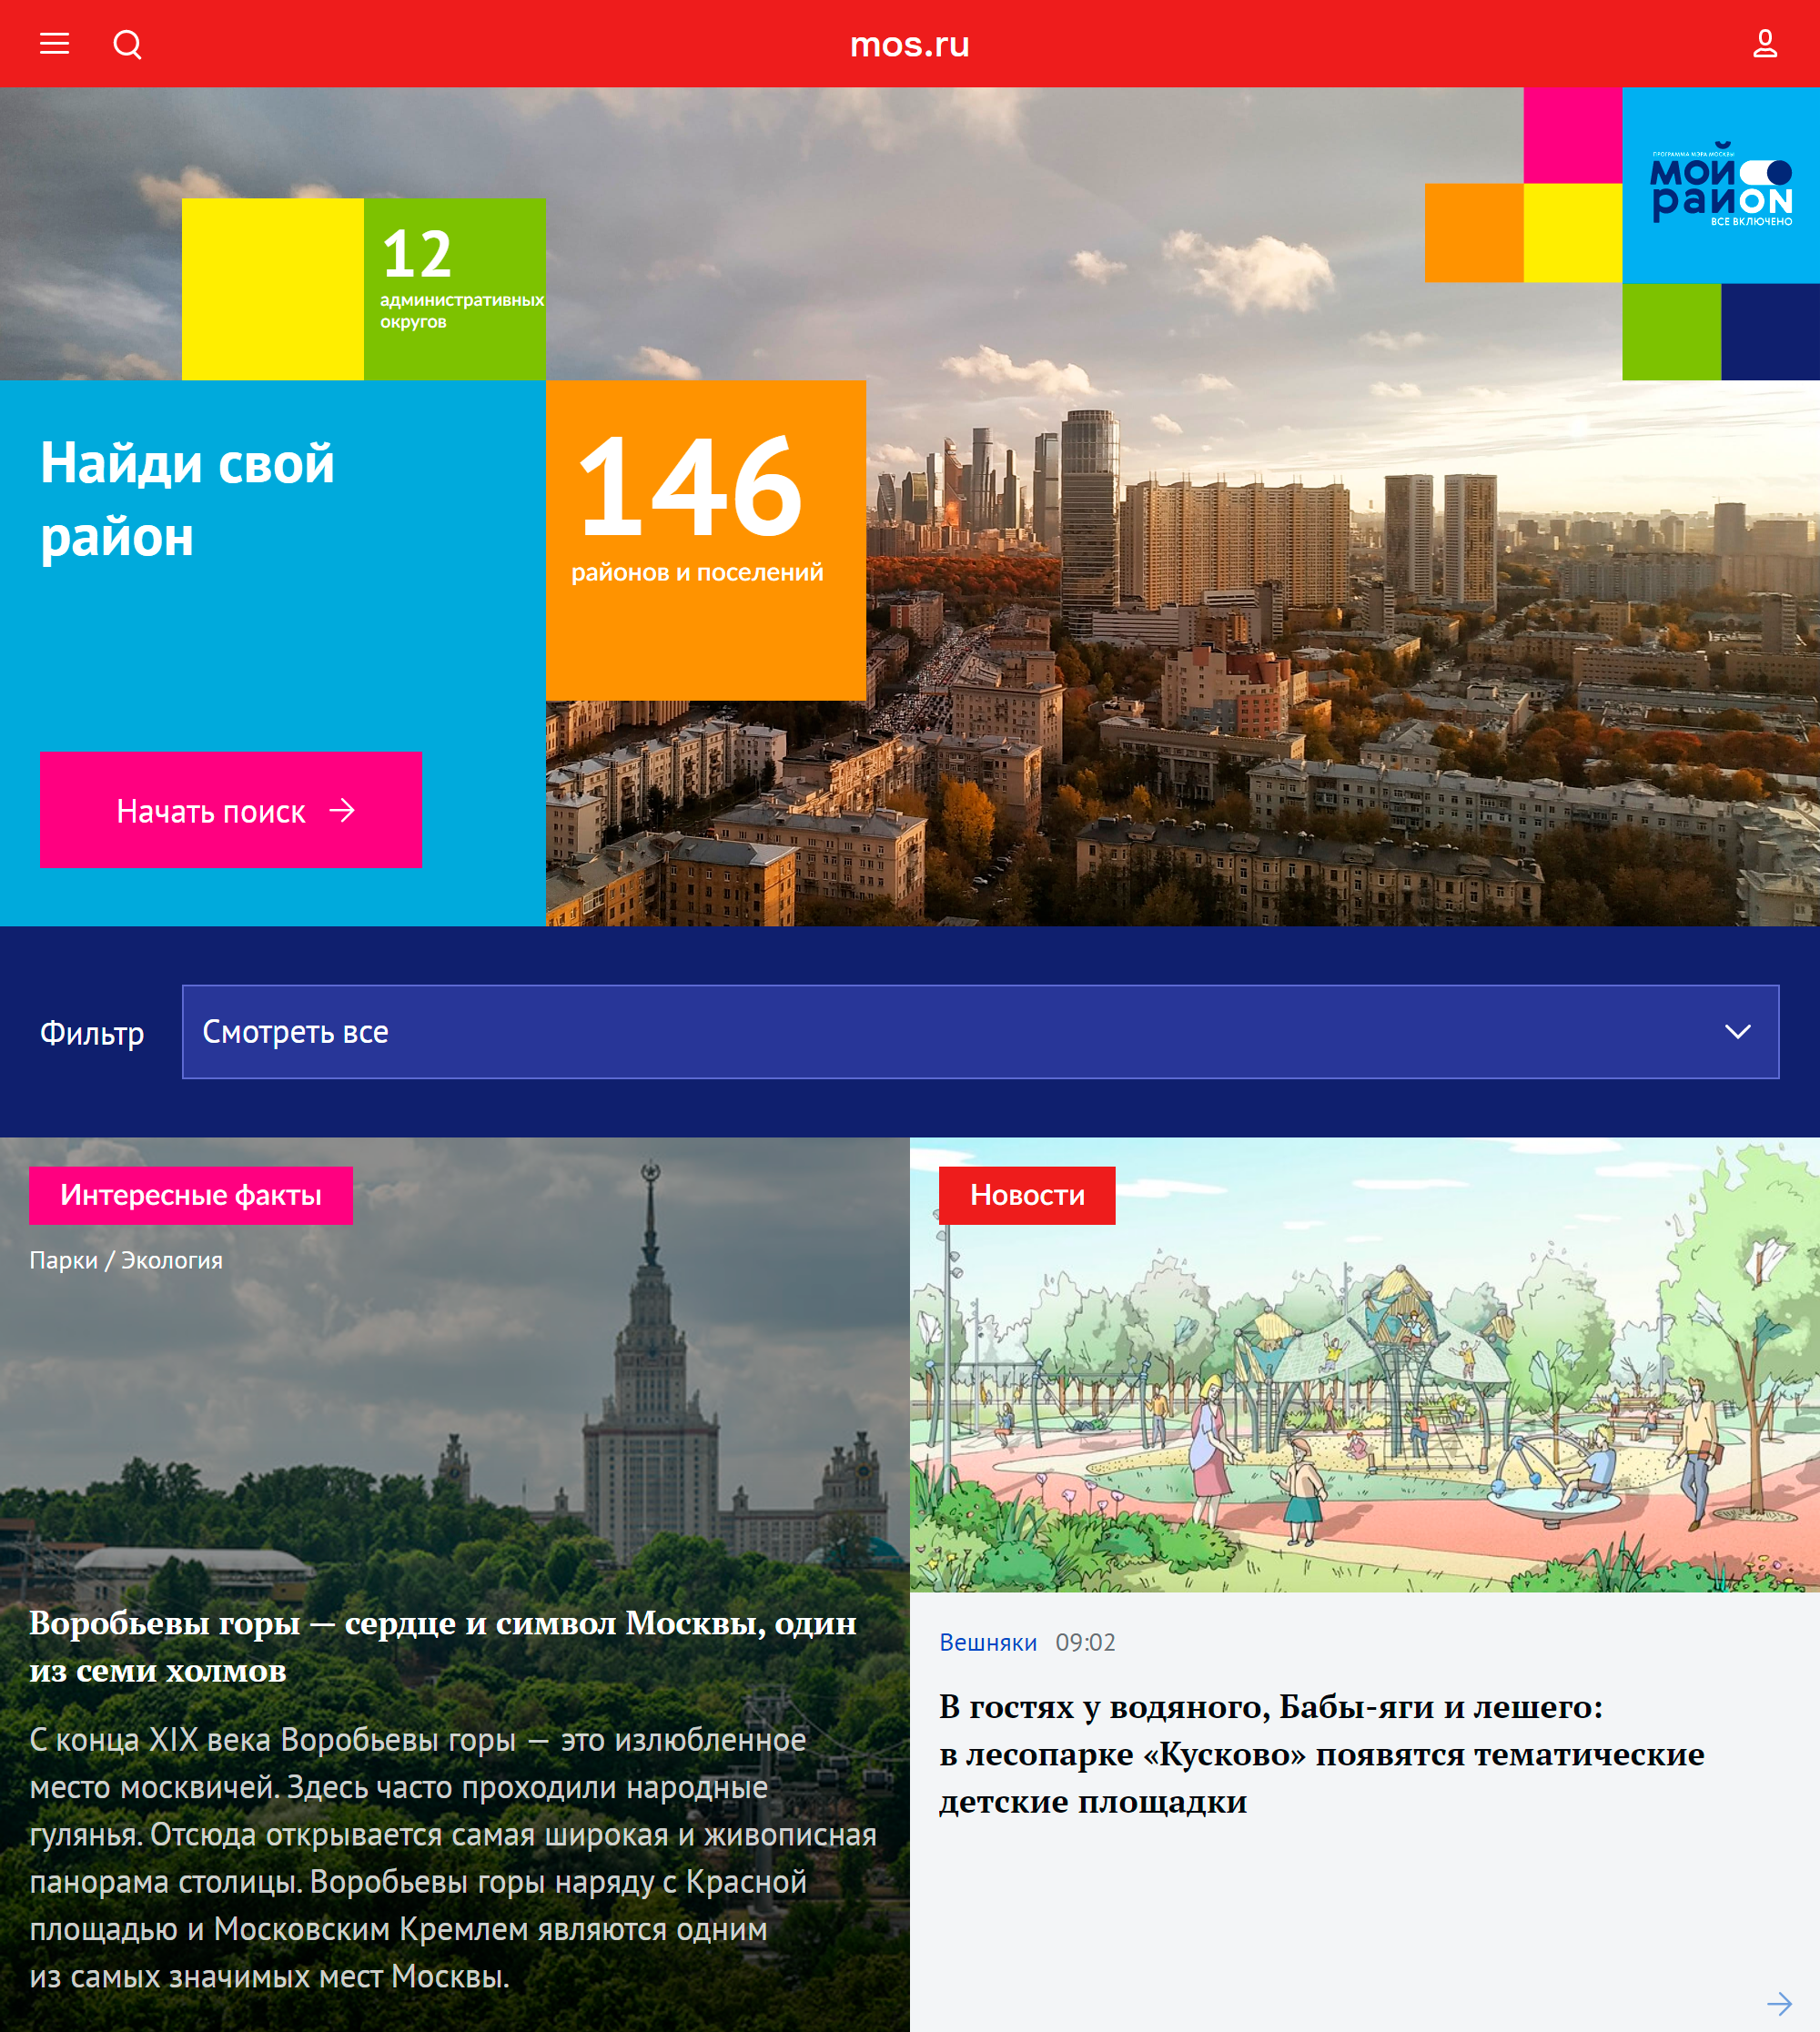 Если вы продаете квартиру в Москве, информацию о социальной, экономической и культурной жизни района для объявления можно посмотреть на mos.ru